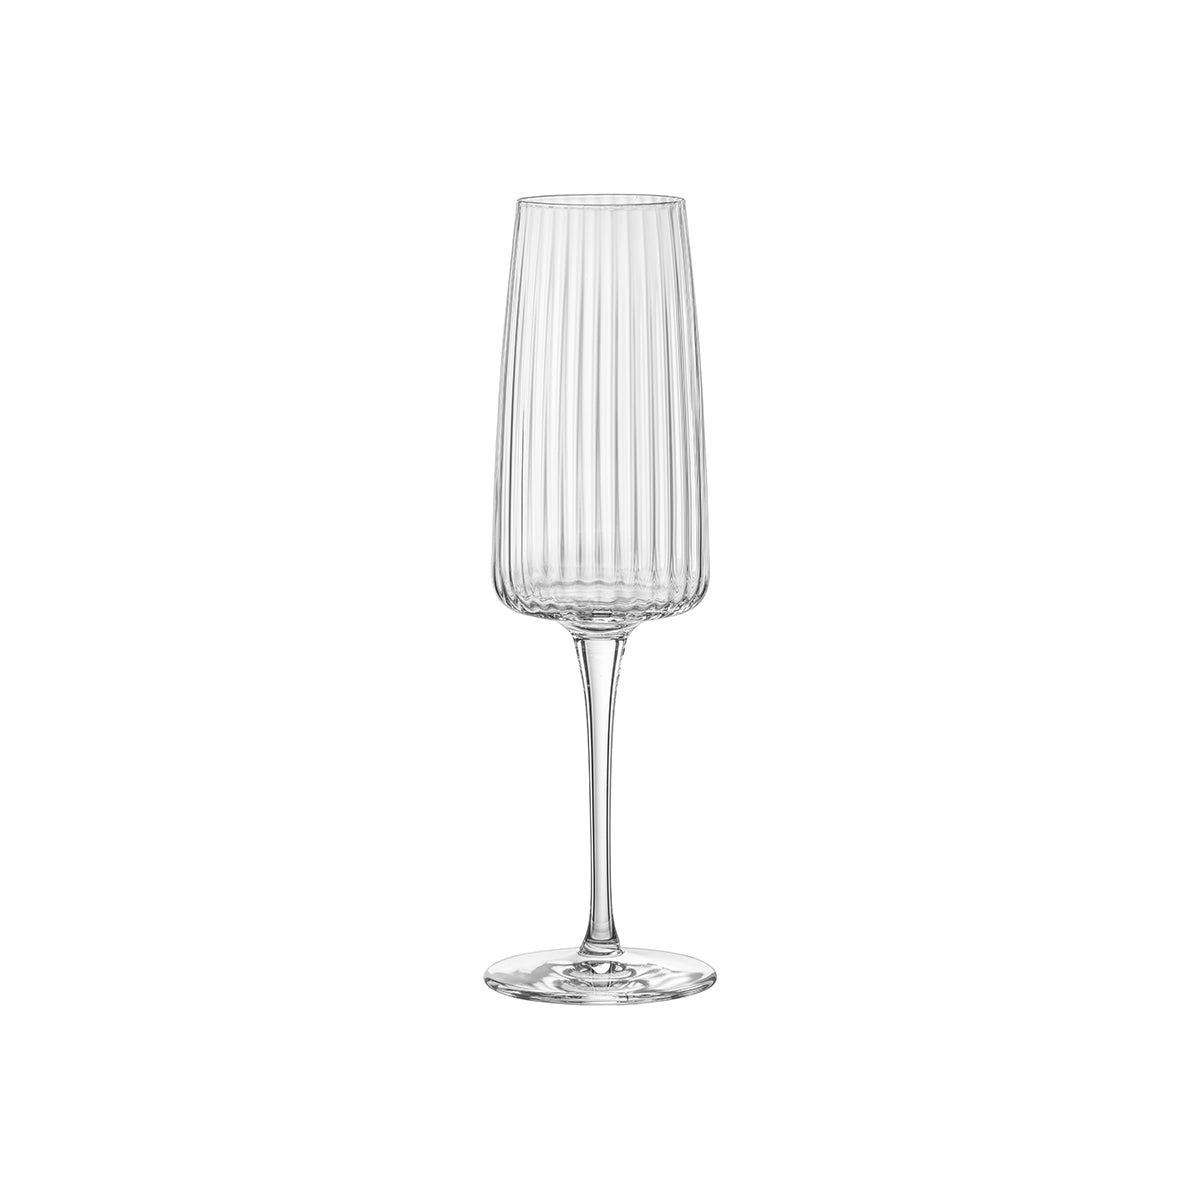 320-200 Bormioli Rocco Exclusiva Prosecco Champagne Glass 255ml Tomkin Australia Hospitality Supplies